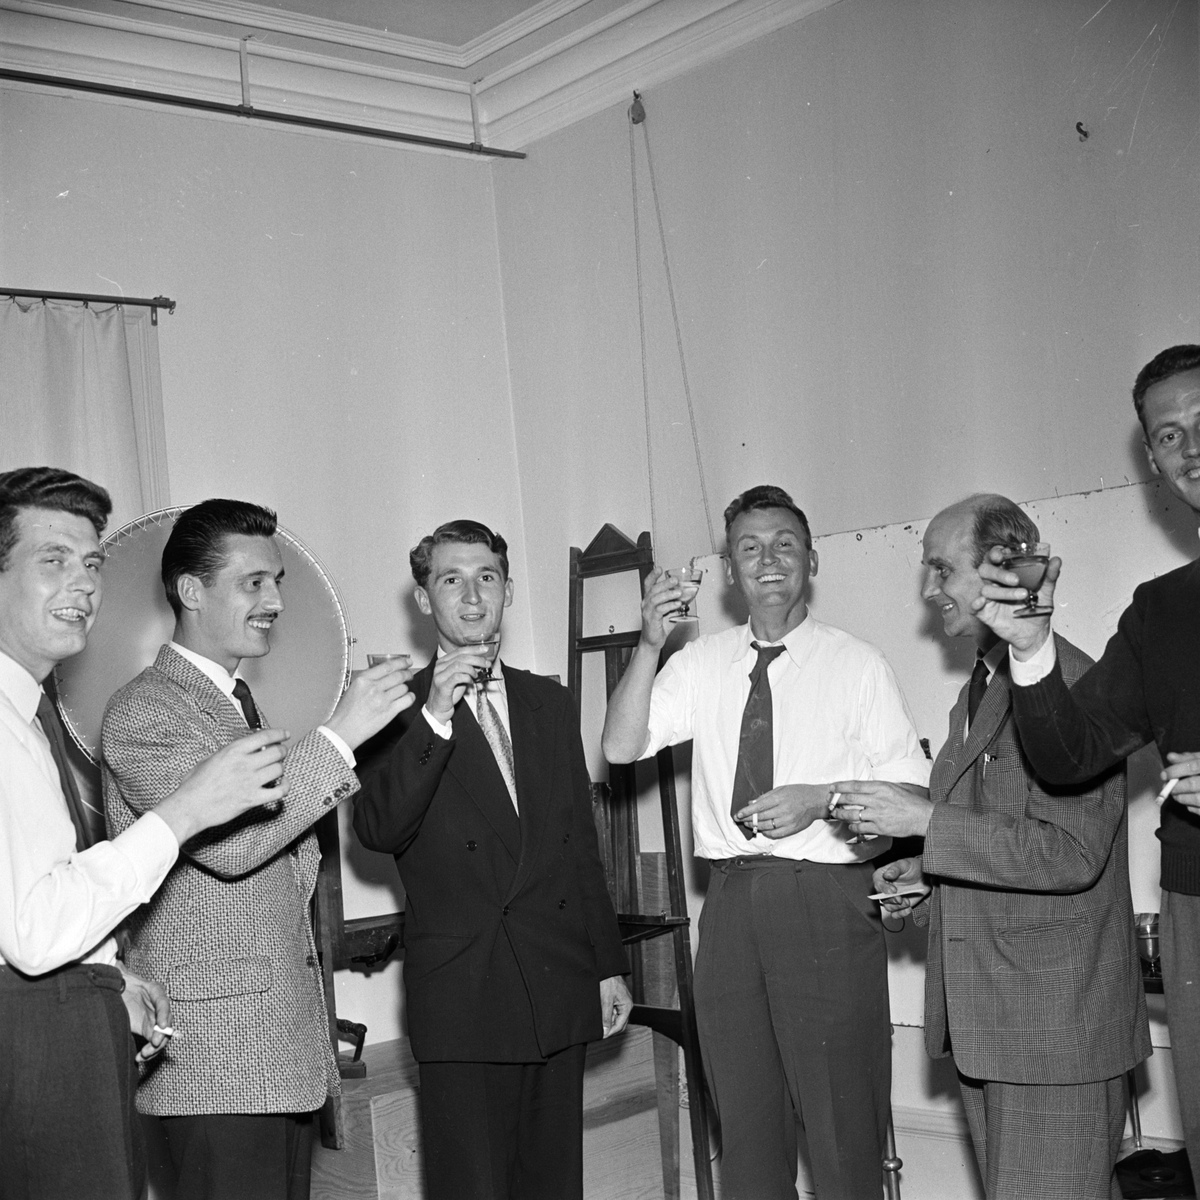 Franska journalister på besök hos bildbyrån Uppsala-Bild, Uppsala augusti 1956